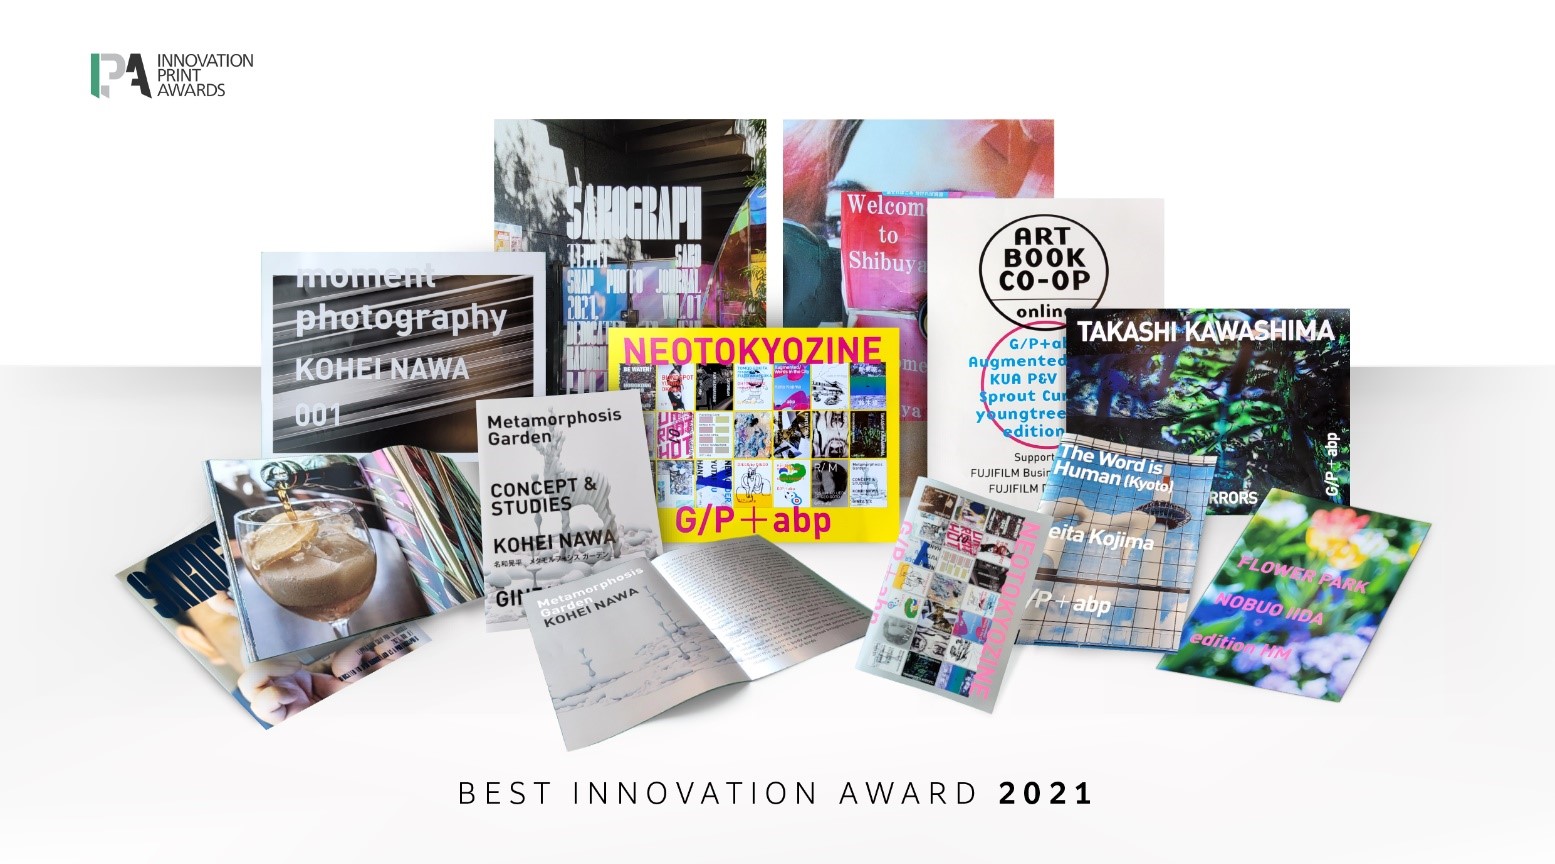 2021年IPA創新印刷大獎 –「最佳創新大獎」得主